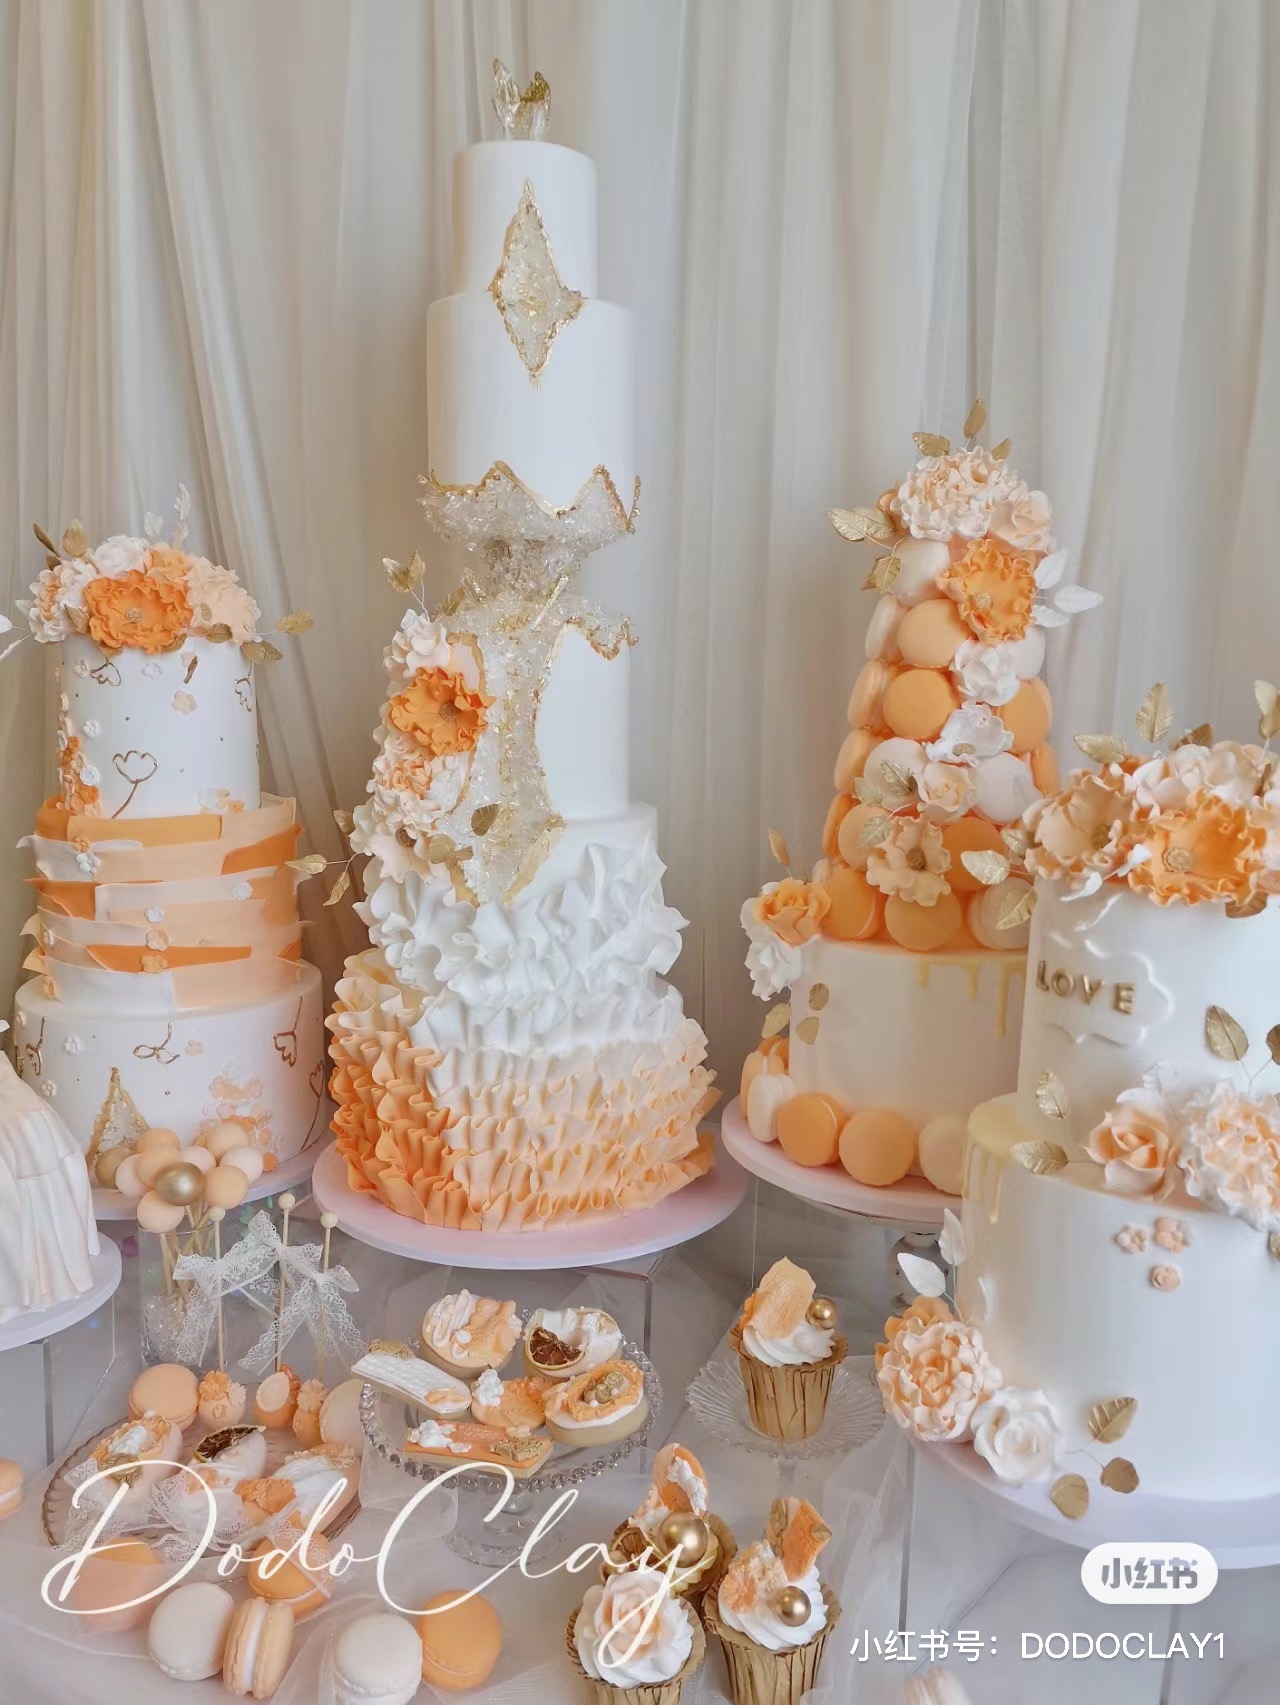 橙色系高层鲜花婚礼订婚小众翻糖蛋糕店橱窗仿真生日蛋糕模型定制